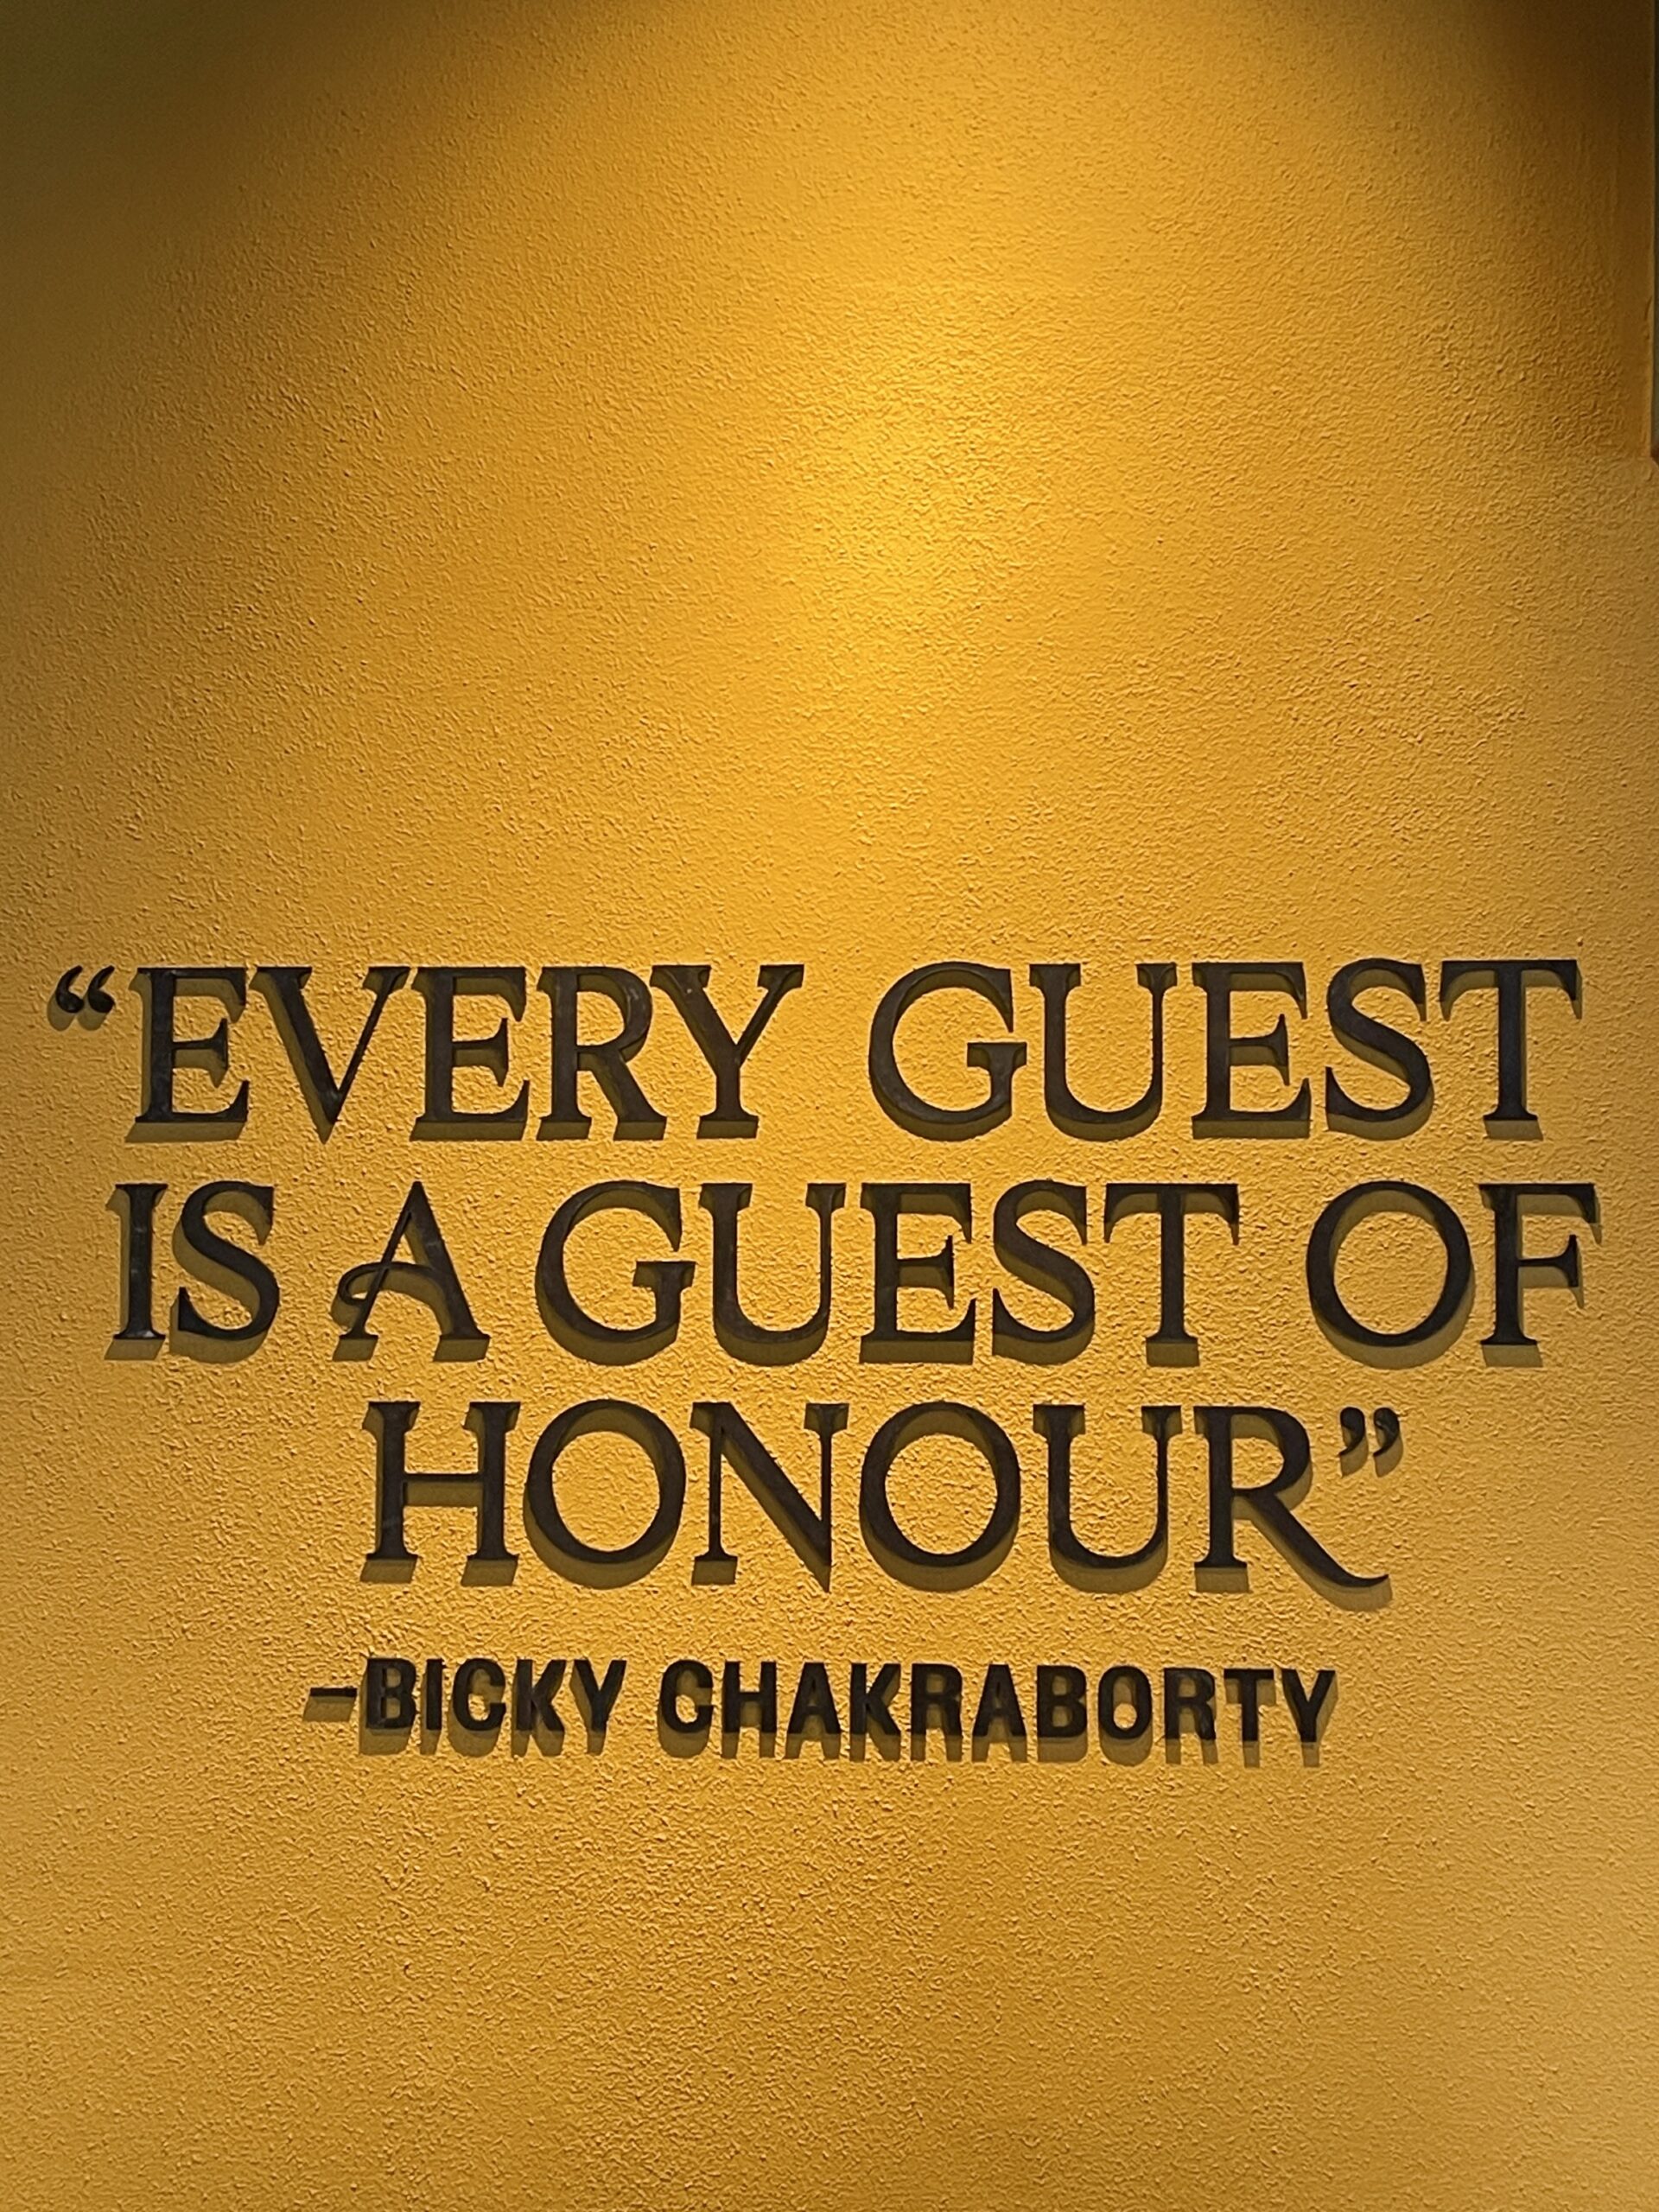 India's citat Bycky Chakraborty